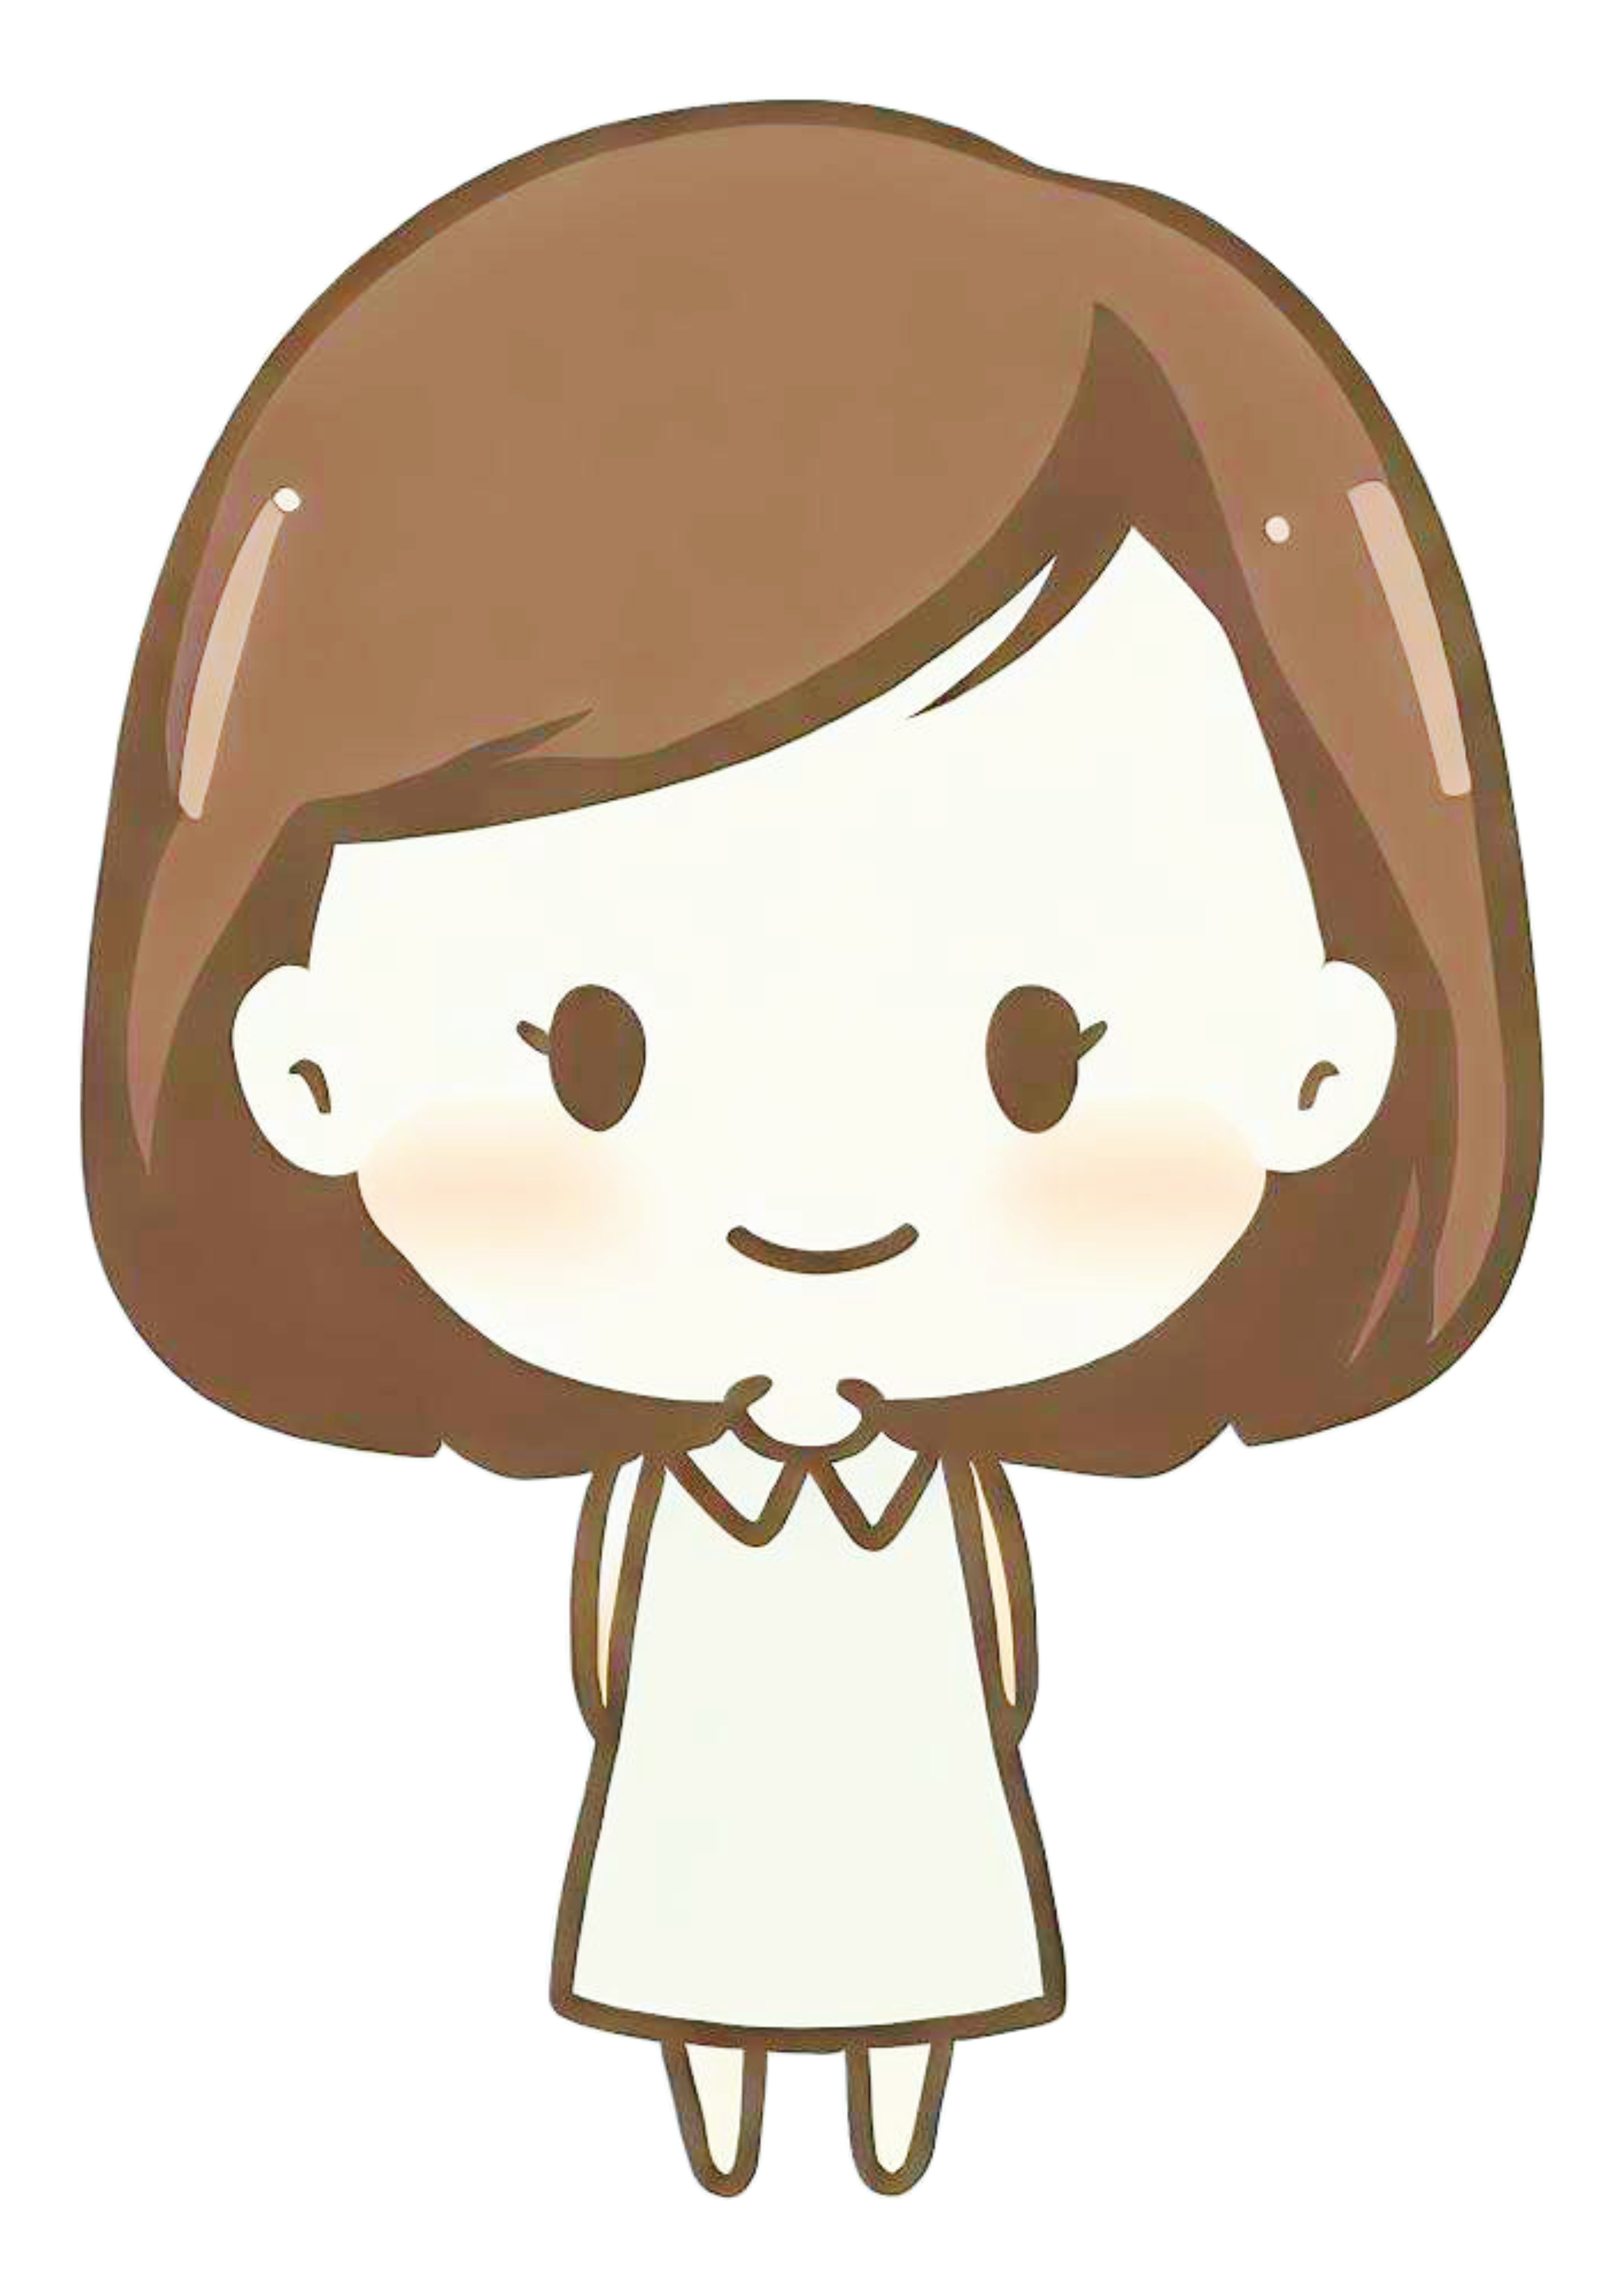 Bonequinha engraçada cabeçuda menina brinquedo toy pocket cute chibi desenho simples png